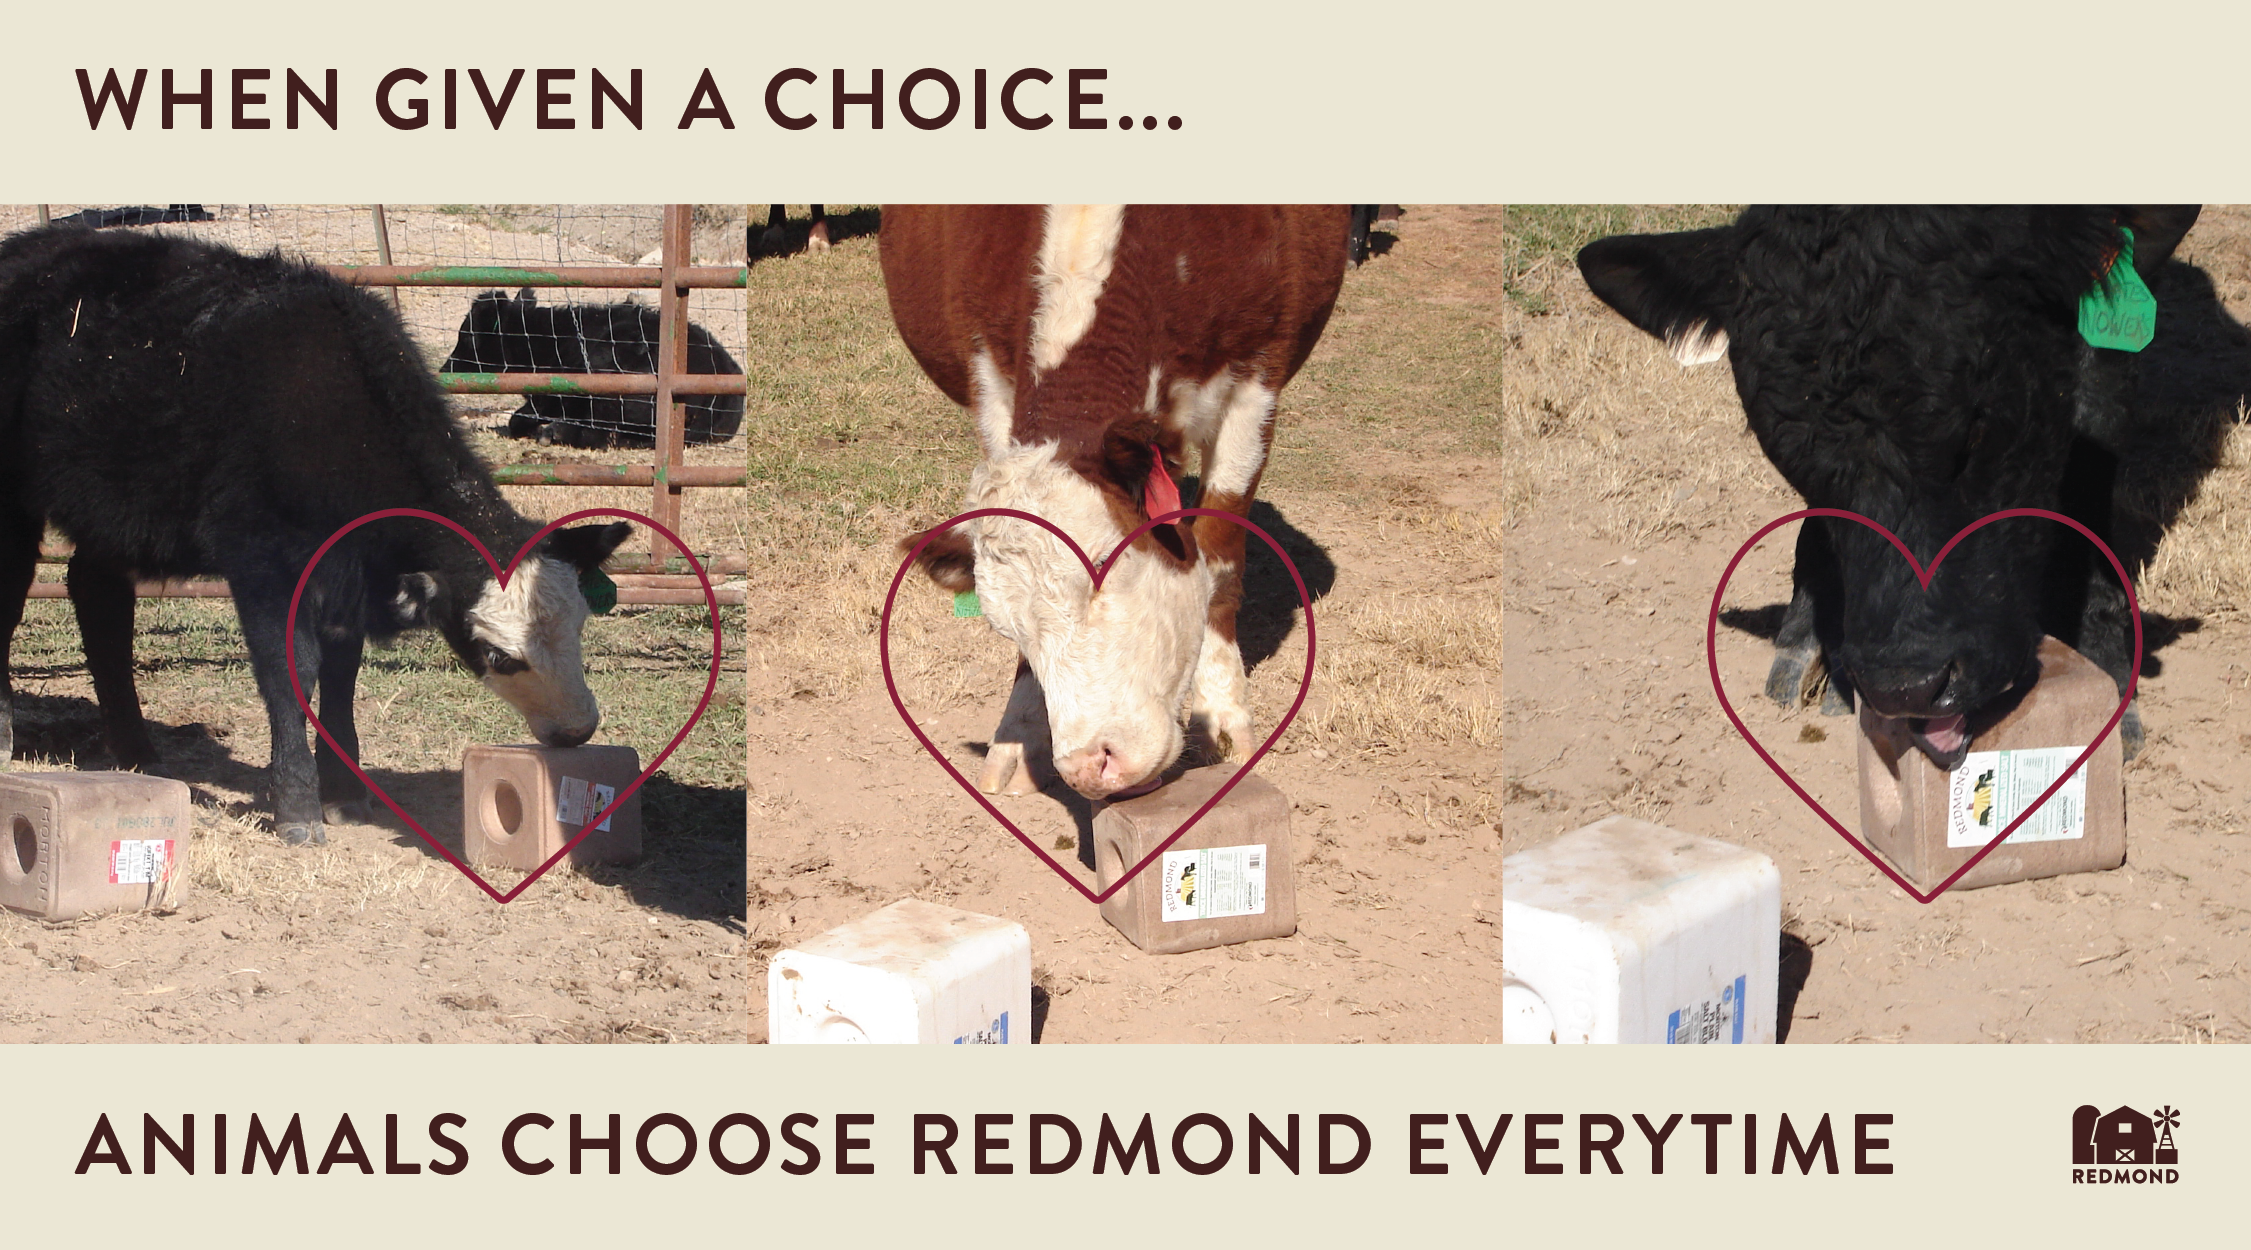 Best Minerals for Livestock: Why Do Animals Prefer Redmond?